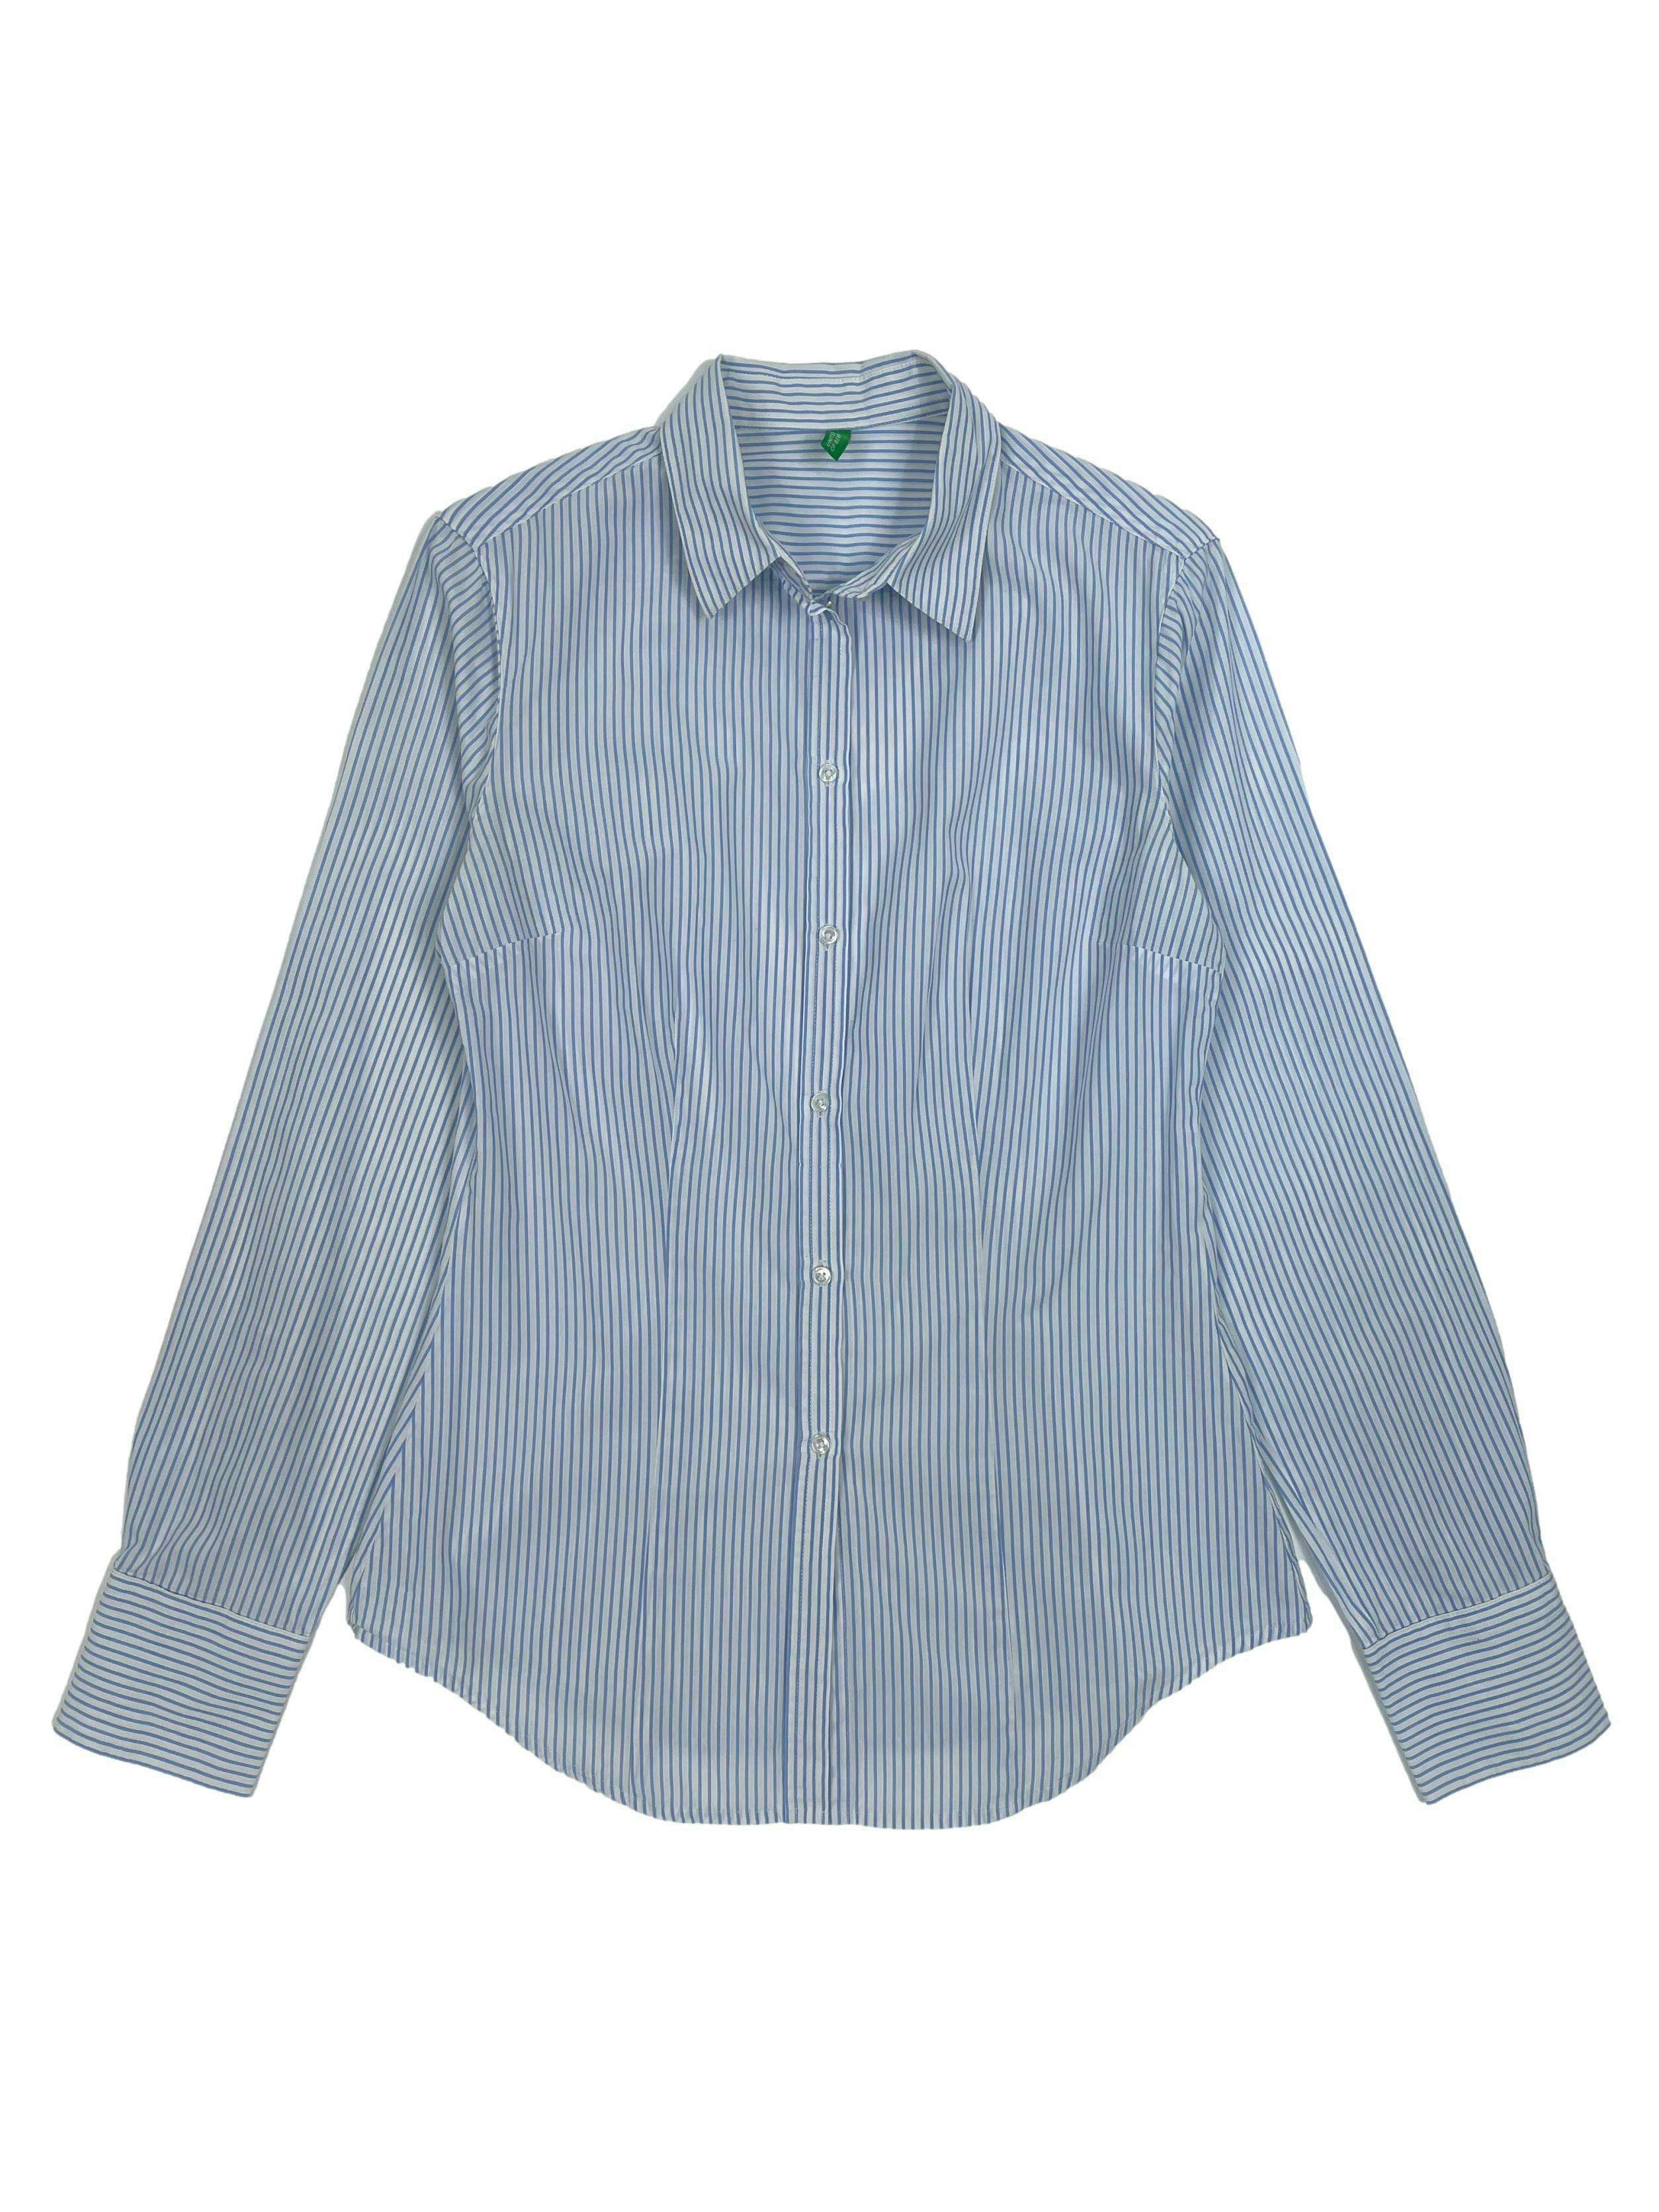  Blusa Benetton a rayas en blanco y celeste,  cuello camisero, pinzas frontales y posteriores, mangas largas y botón de repuesto.Busto 90cm, Largo 55cm.